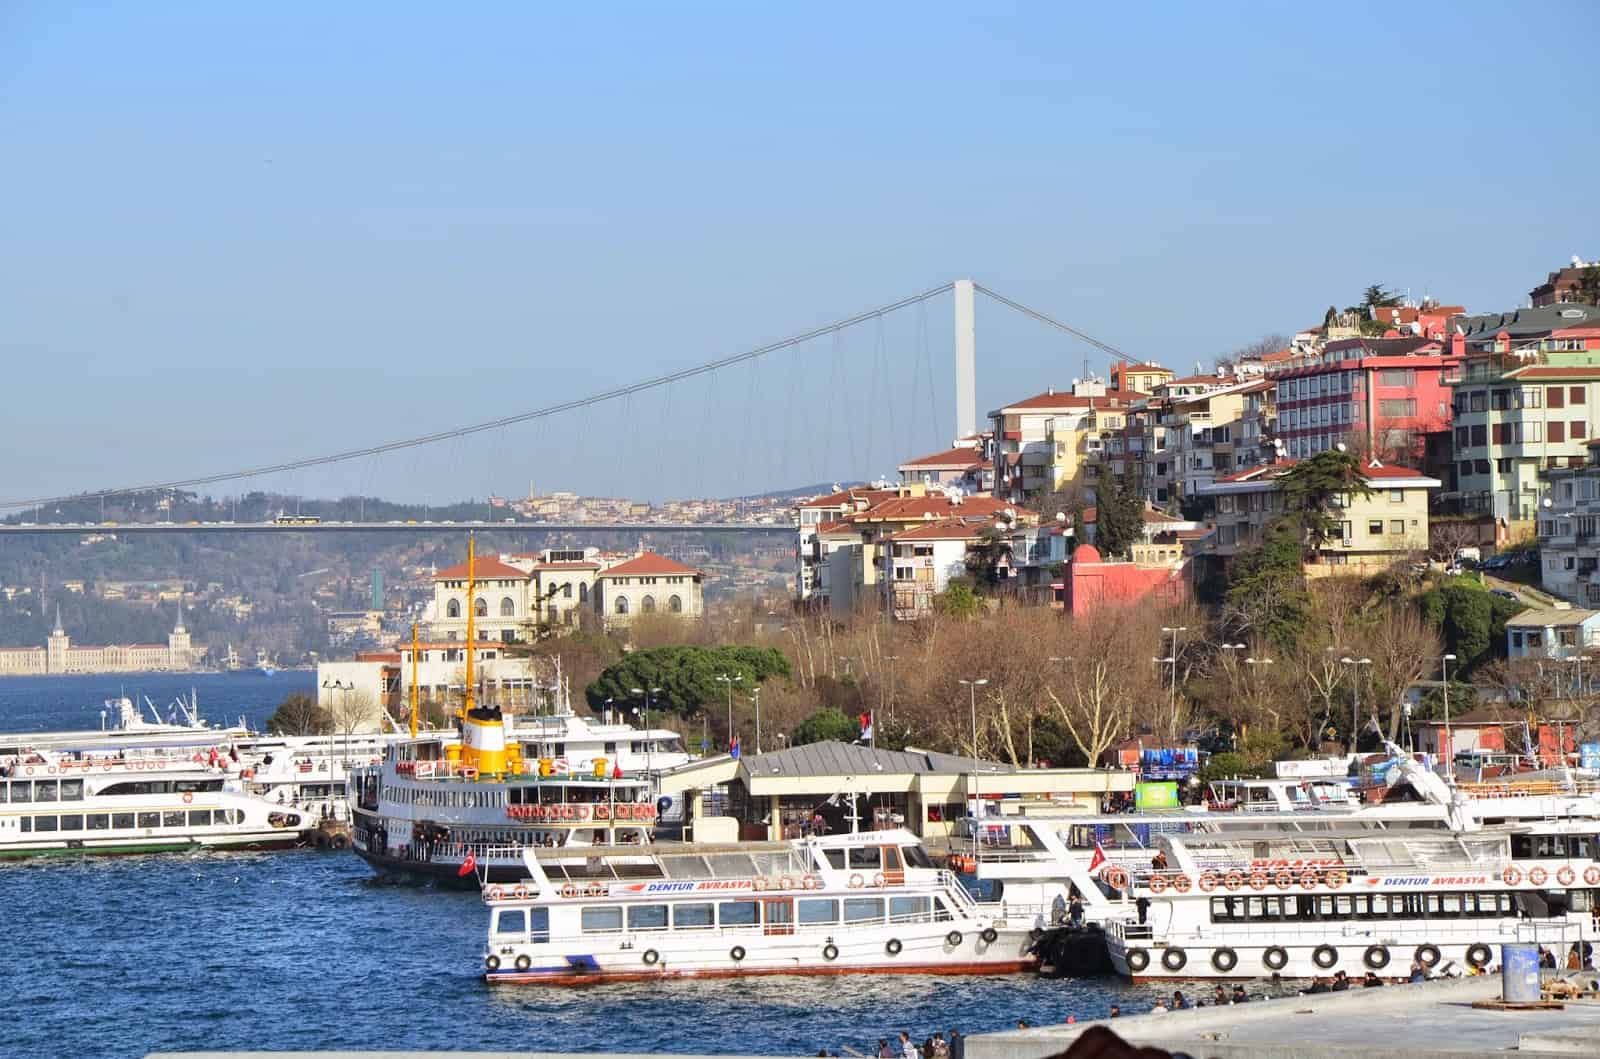 Üsküdar, Istanbul, Turkey